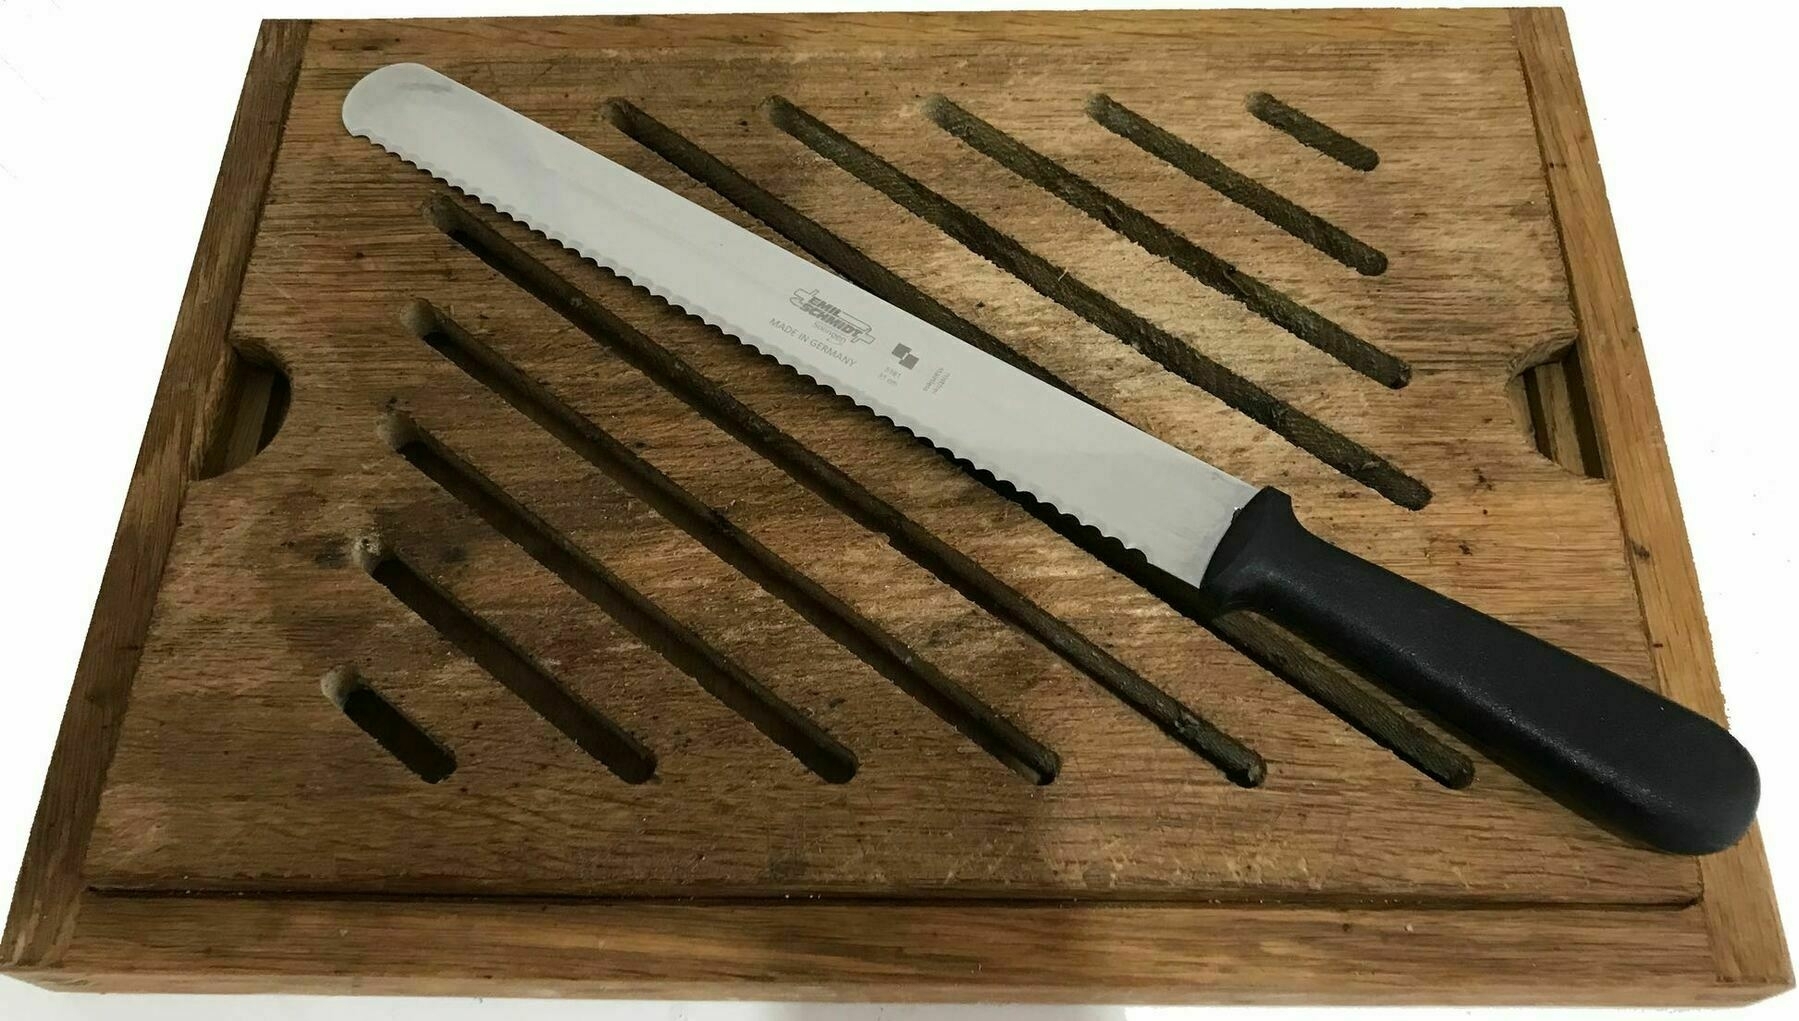 A bread knife on a bread board